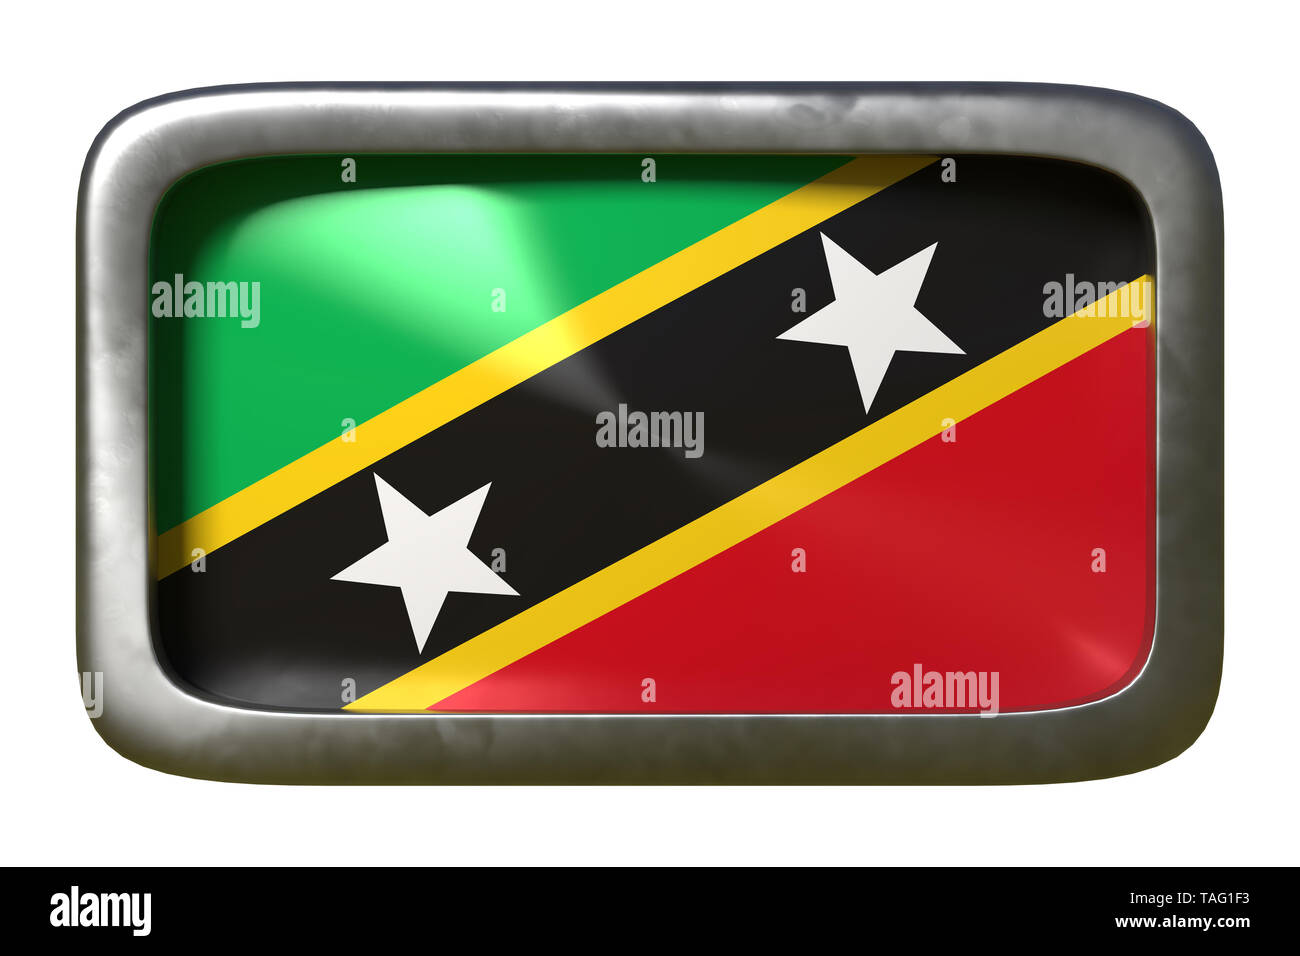 3D-Rendering für eine Saint Christopher und Nevis Flagge auf einem rostigen Zeichen auf weißem Hintergrund Stockfoto